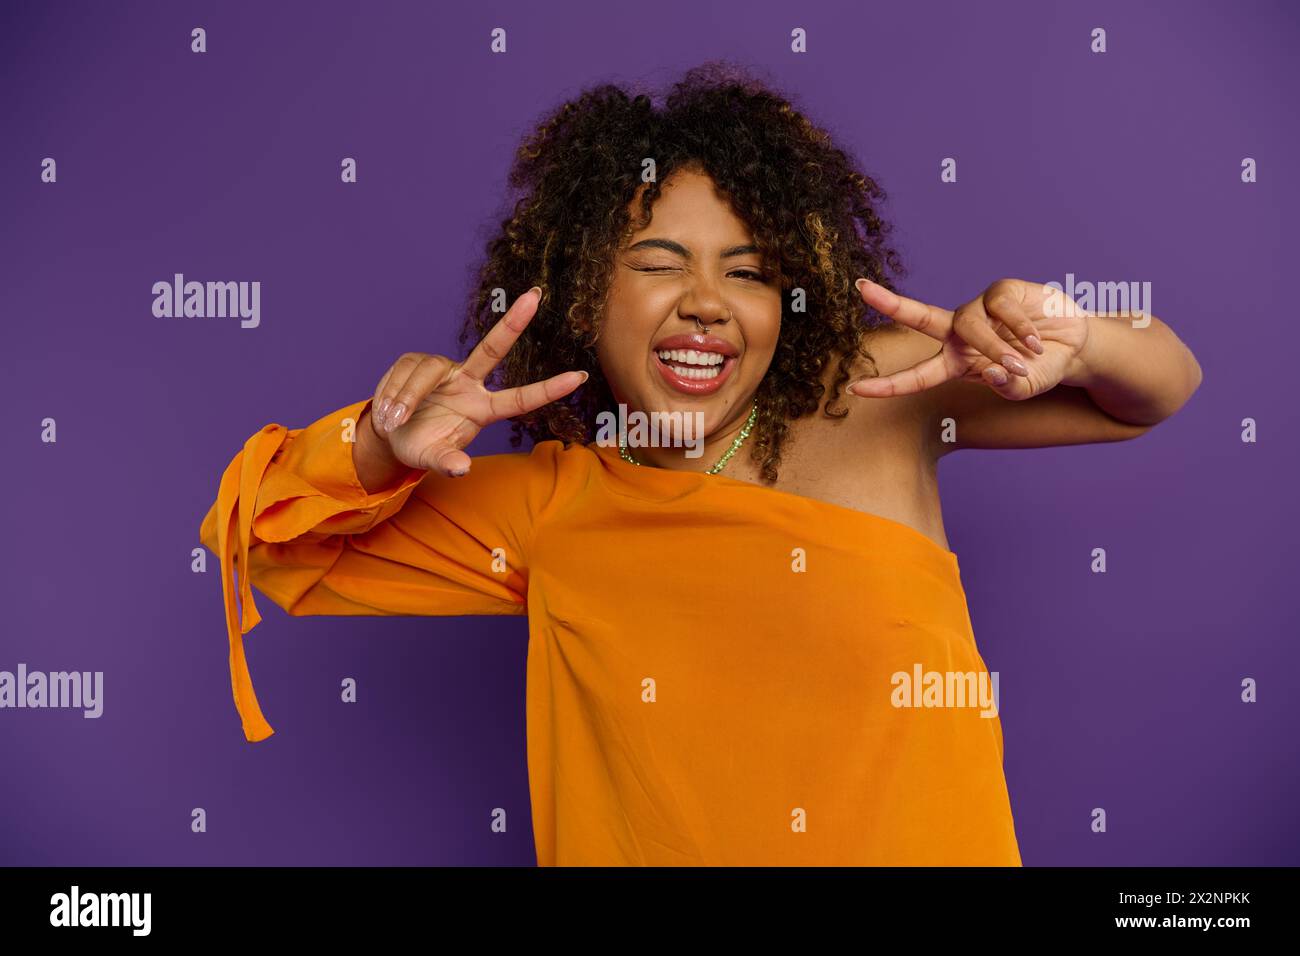 Femme afro-américaine en haut orange frappe un geste de signe de paix. Banque D'Images